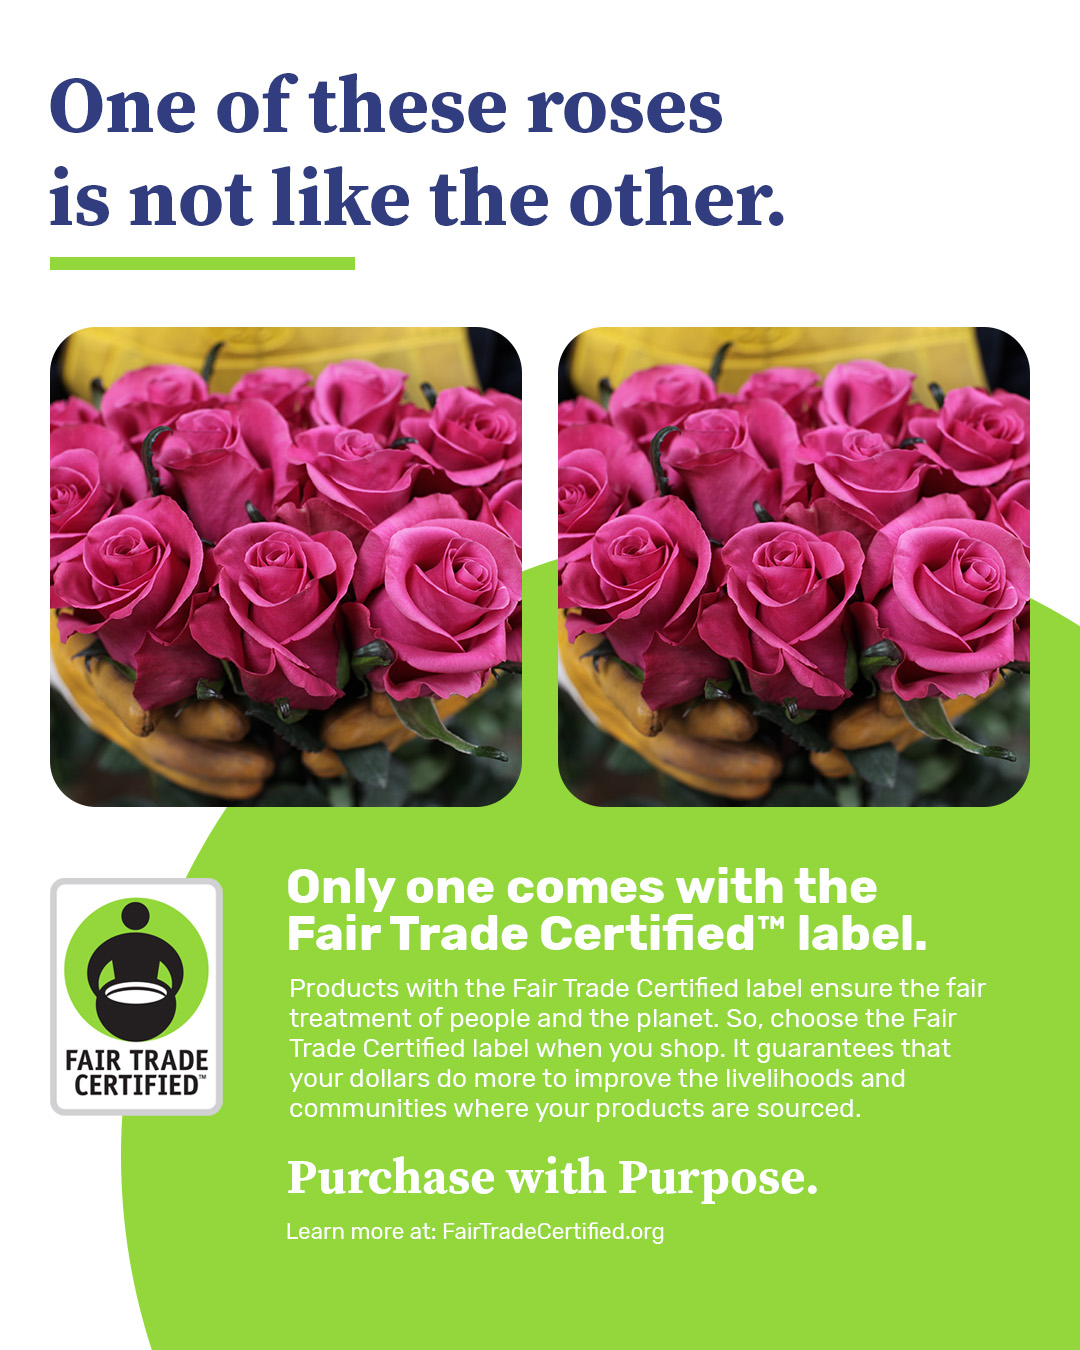 Visual de dos imágenes idénticas de rosas con el texto: "Una de estas rosas no es como la otra. Solo uno viene con la etiqueta Fair Trade Certified".